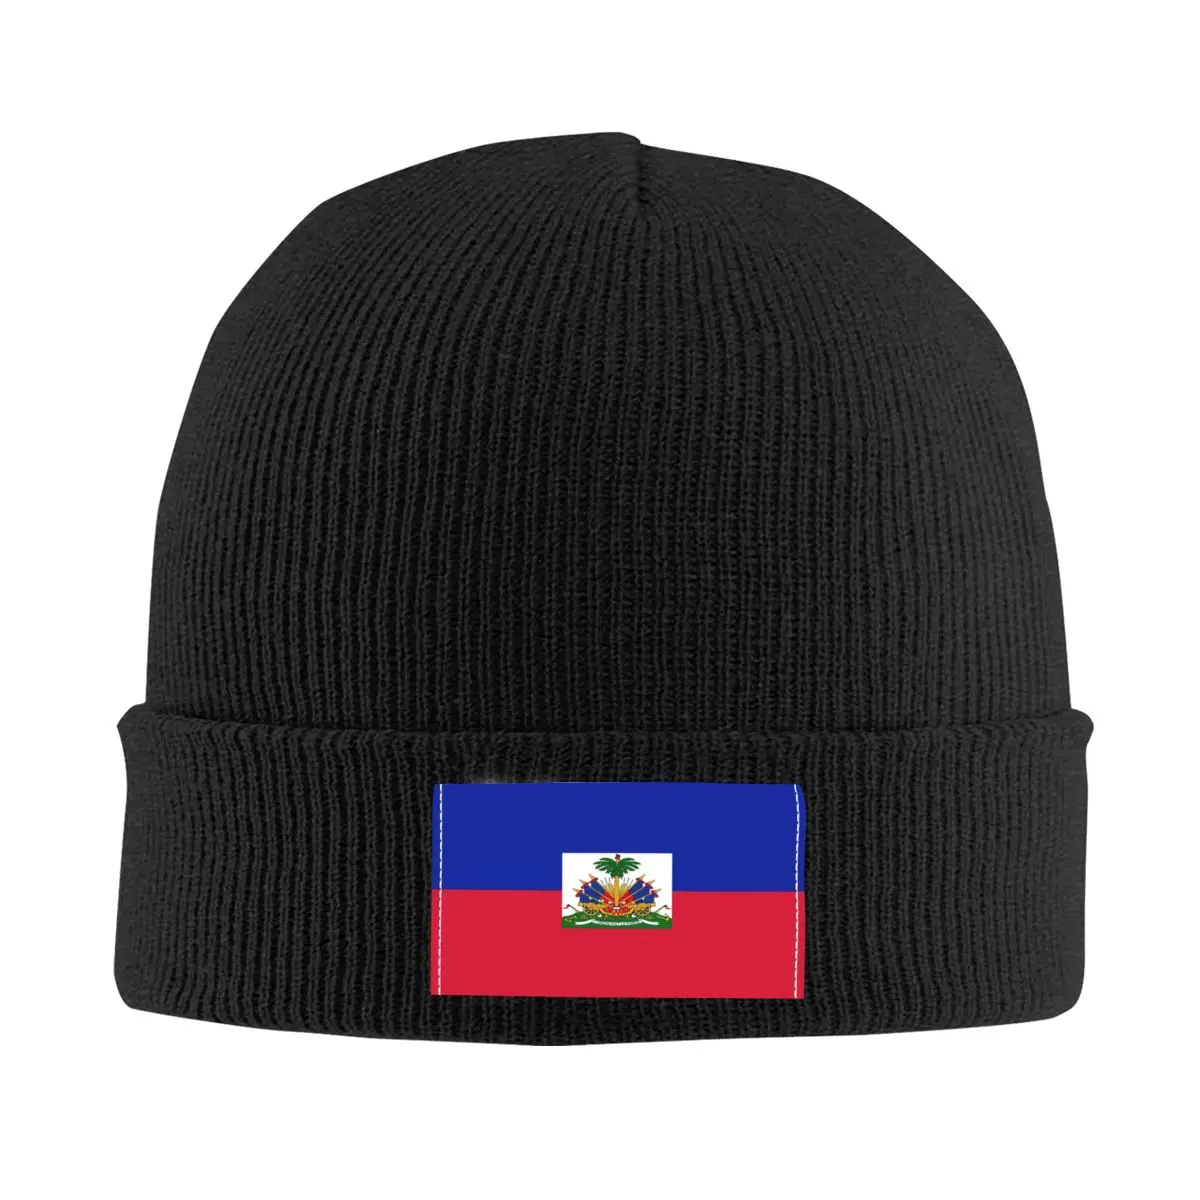 

Шапки-бини с флагом Гаити, шапки унисекс, зимняя теплая вязаная шапка для женщин и мужчин, уличная шапка для взрослых, шапки, лыжная шапка для активного отдыха